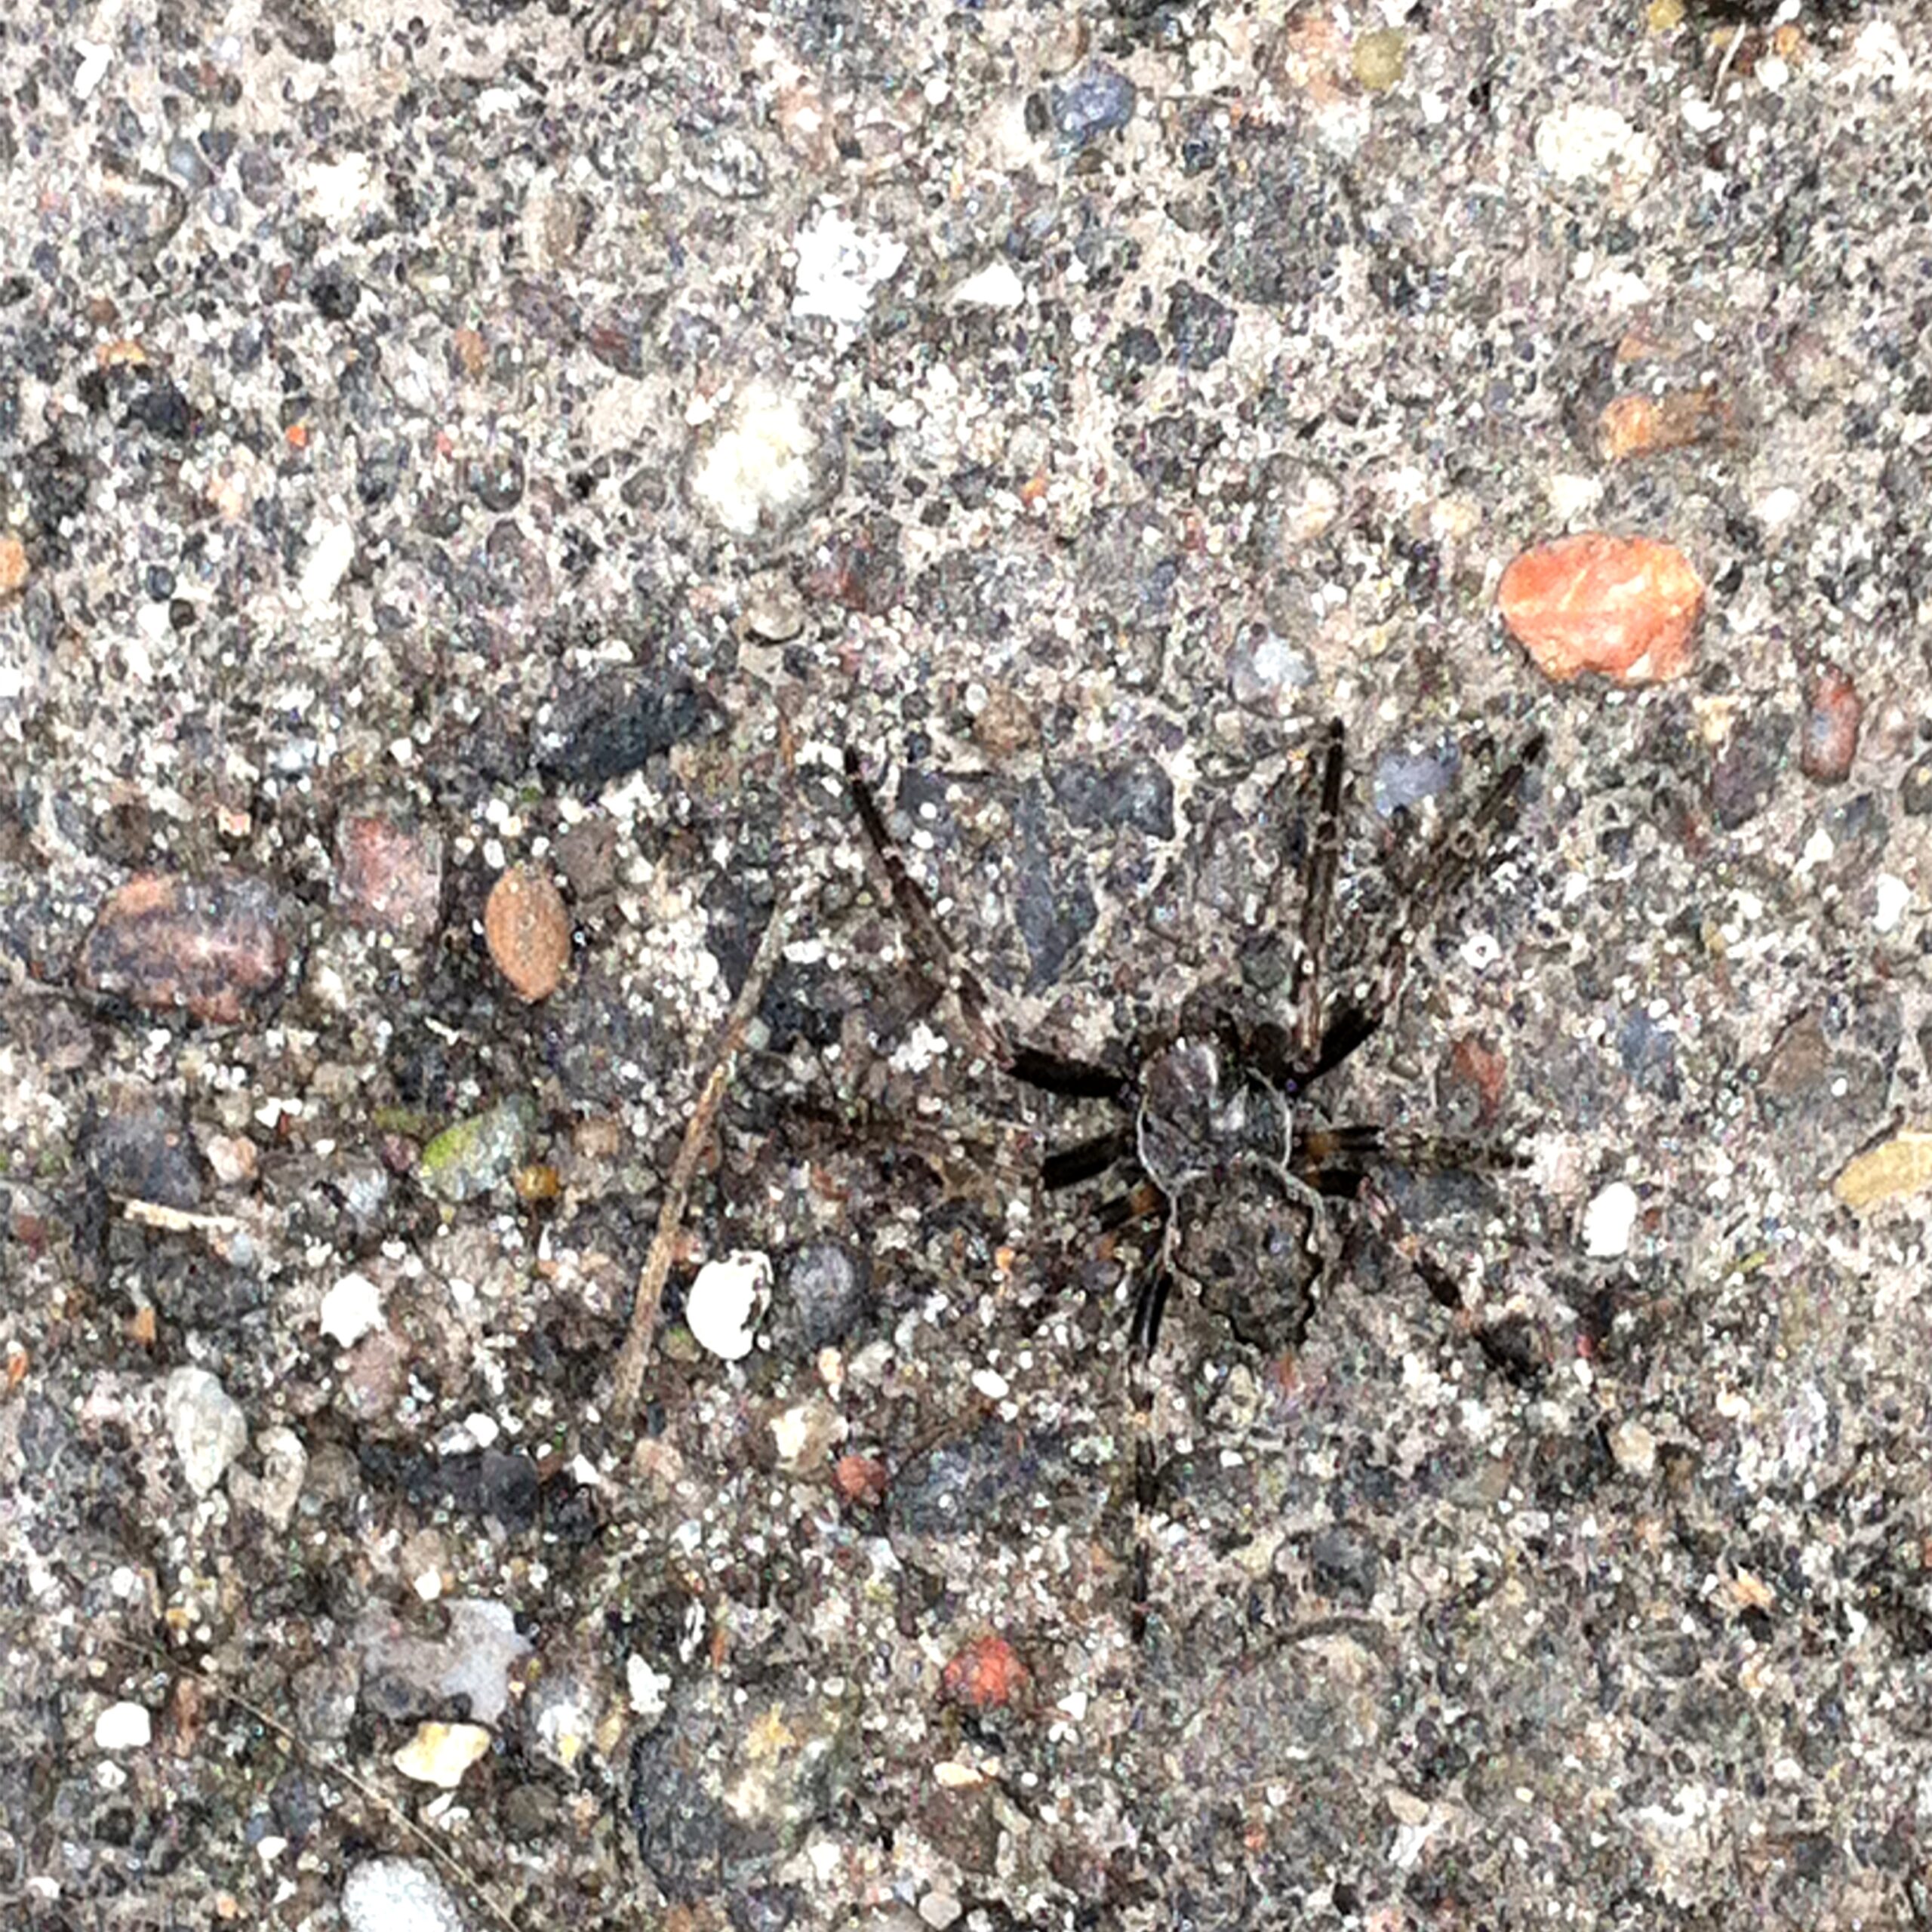 aranha preta num chão de pedra cinzento-escuro, com cores semelhantes